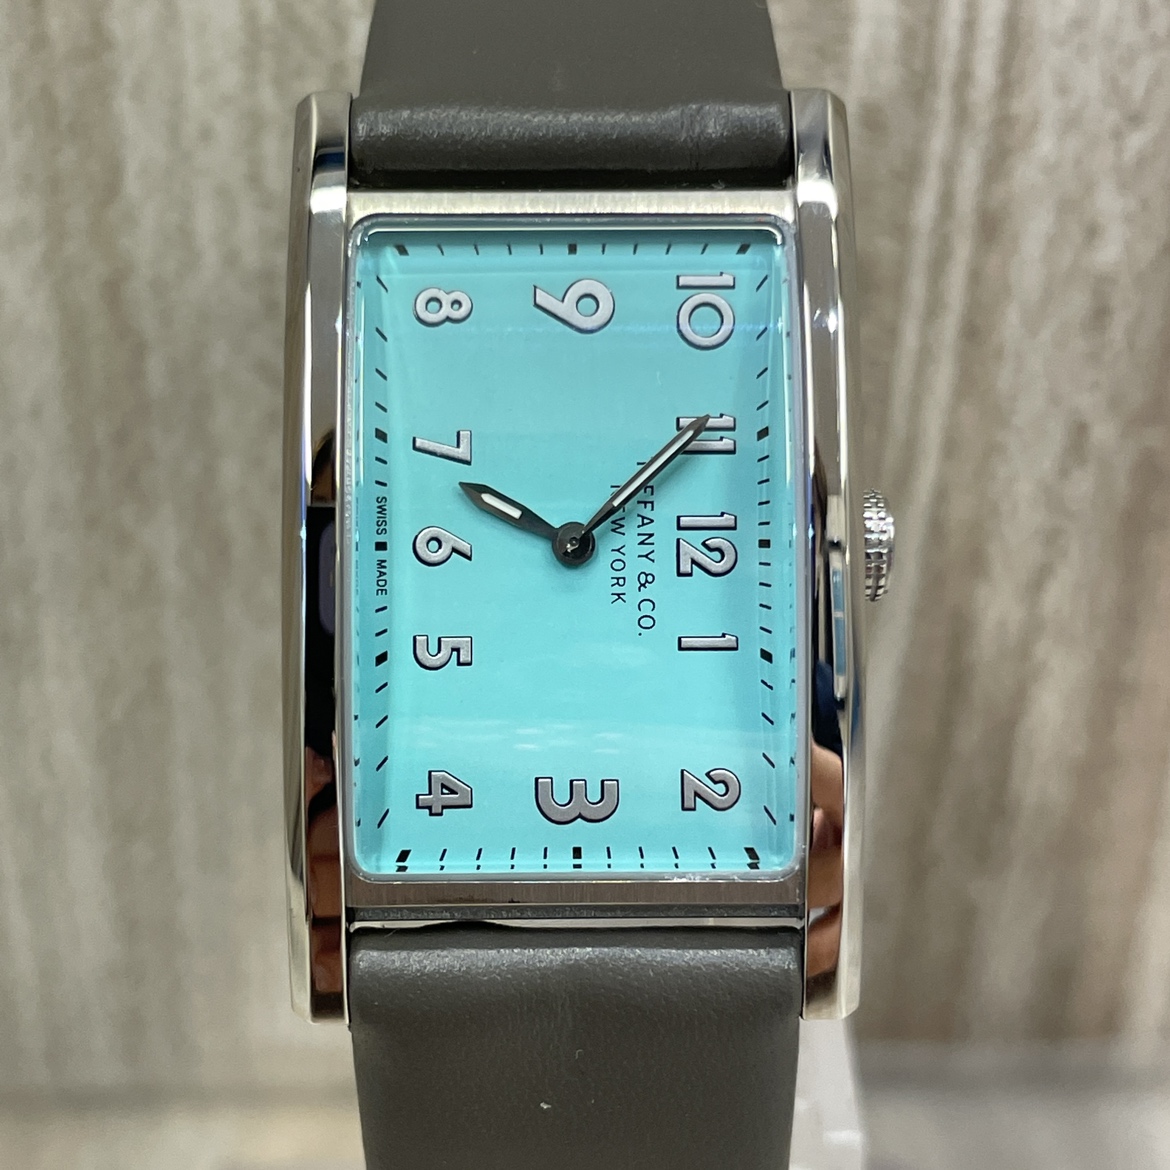 ティファニーのイーストウエストミニ クォーツ腕時計 36668679の買取実績です。